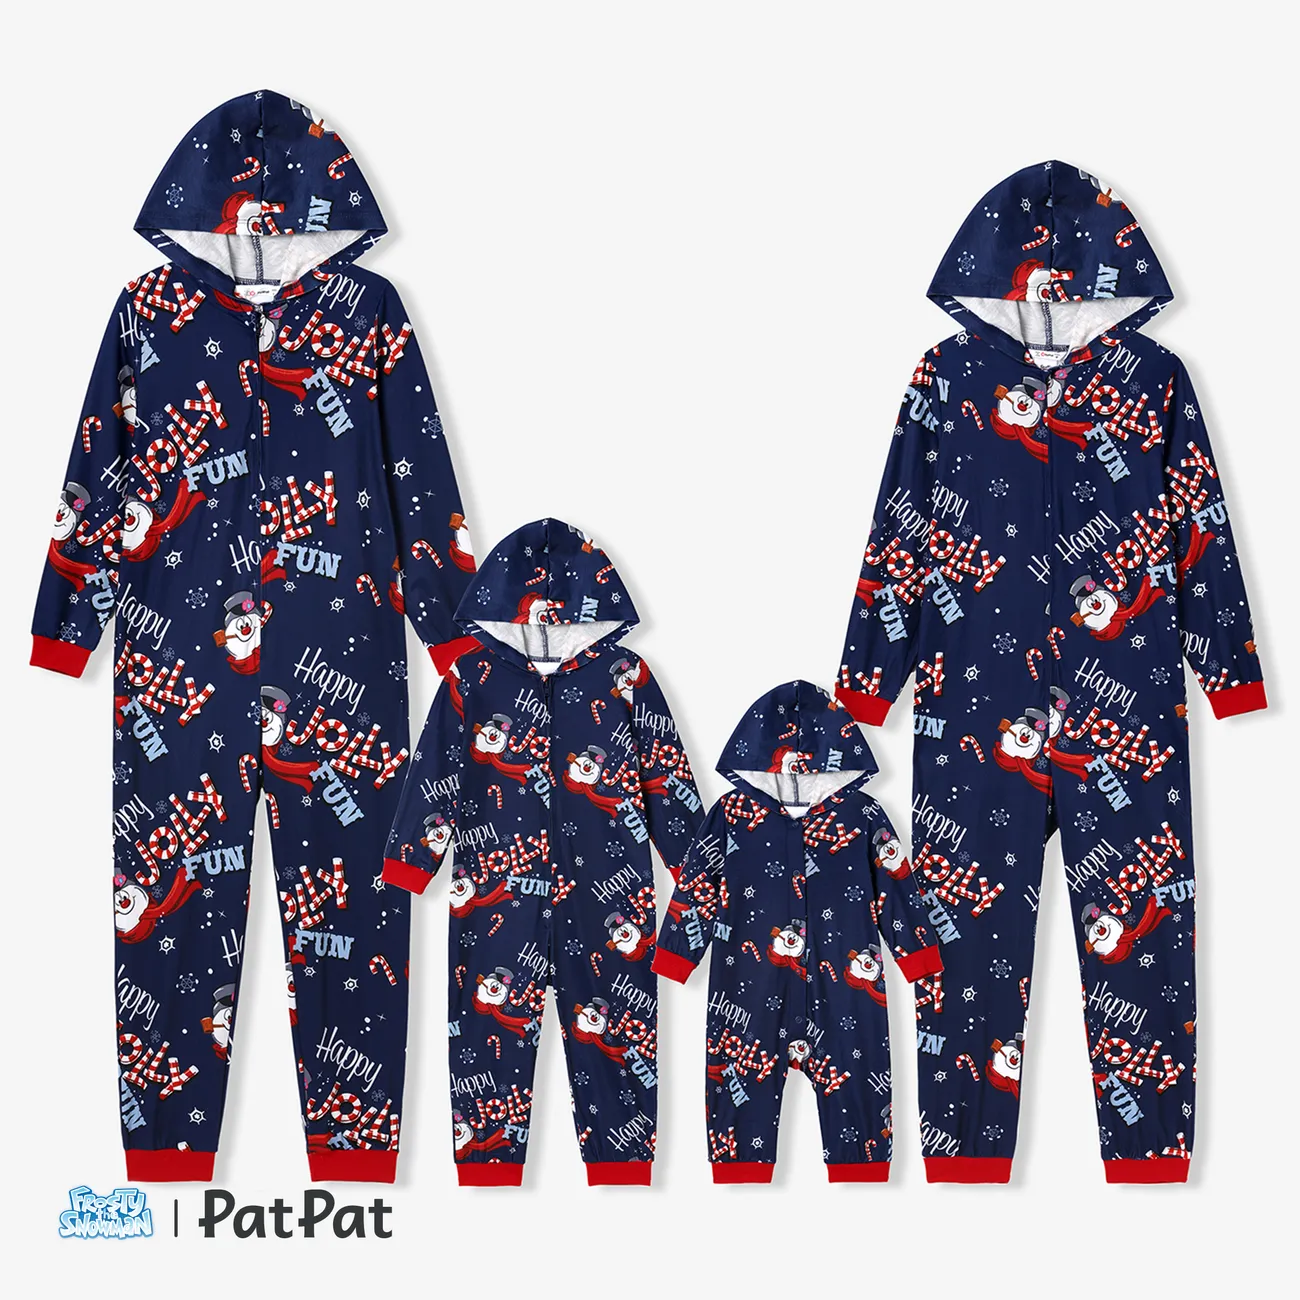 Frosty The Snowman Noël Look Familial Manches longues Tenues de famille assorties Pyjamas (Flame Resistant) Bleu Foncé big image 1